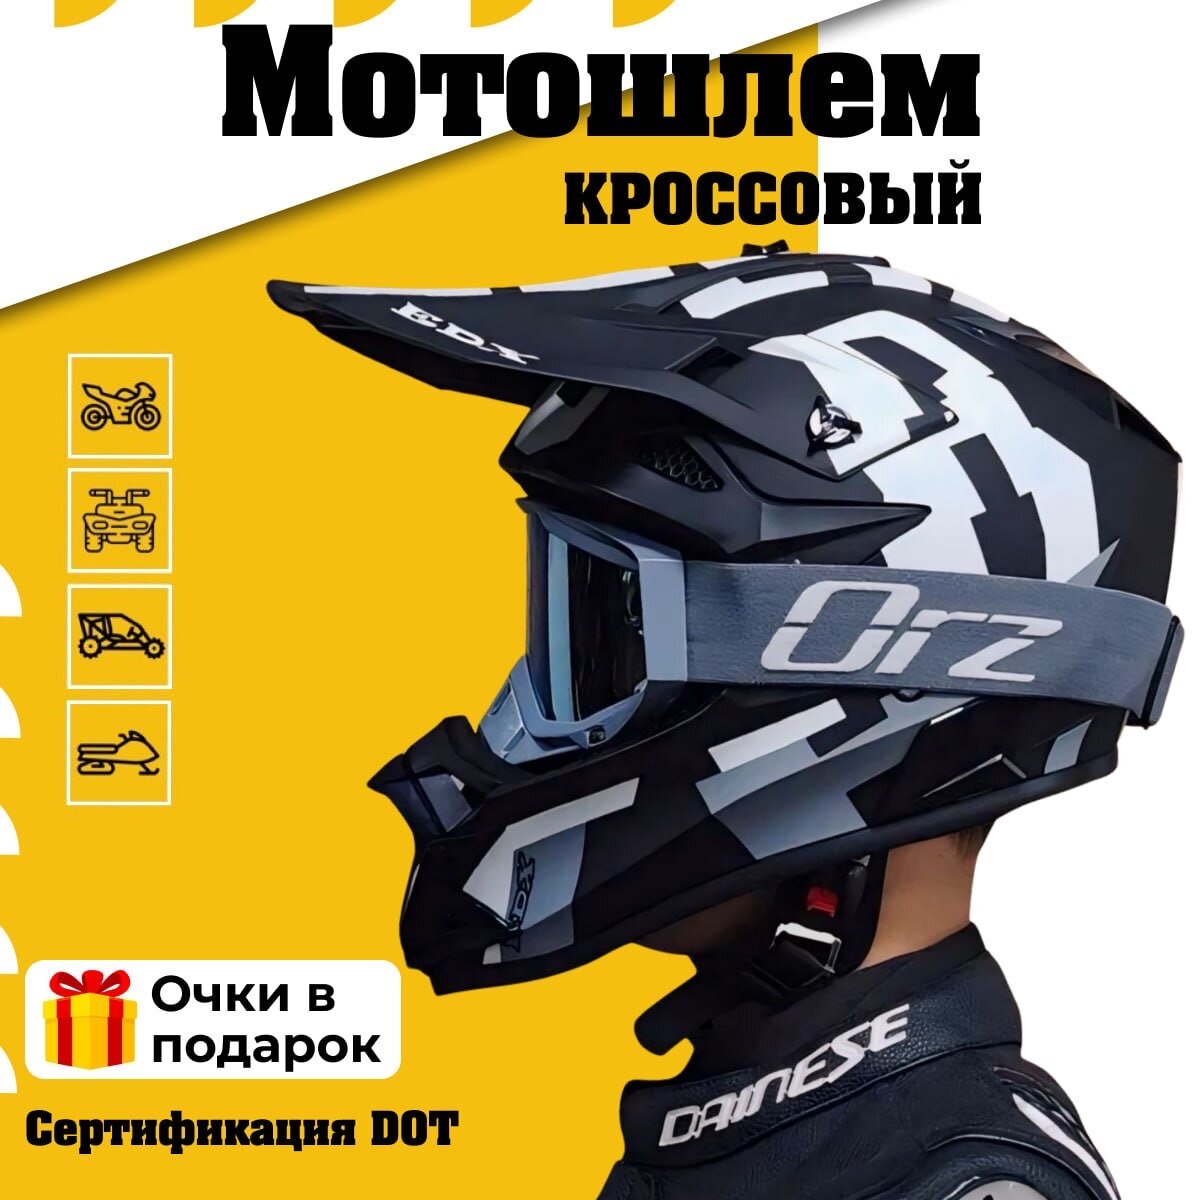 Шлем с очками кроссовый для мотоцикла квадроцикла, мотошлем питбайк EDX, черно-белый M